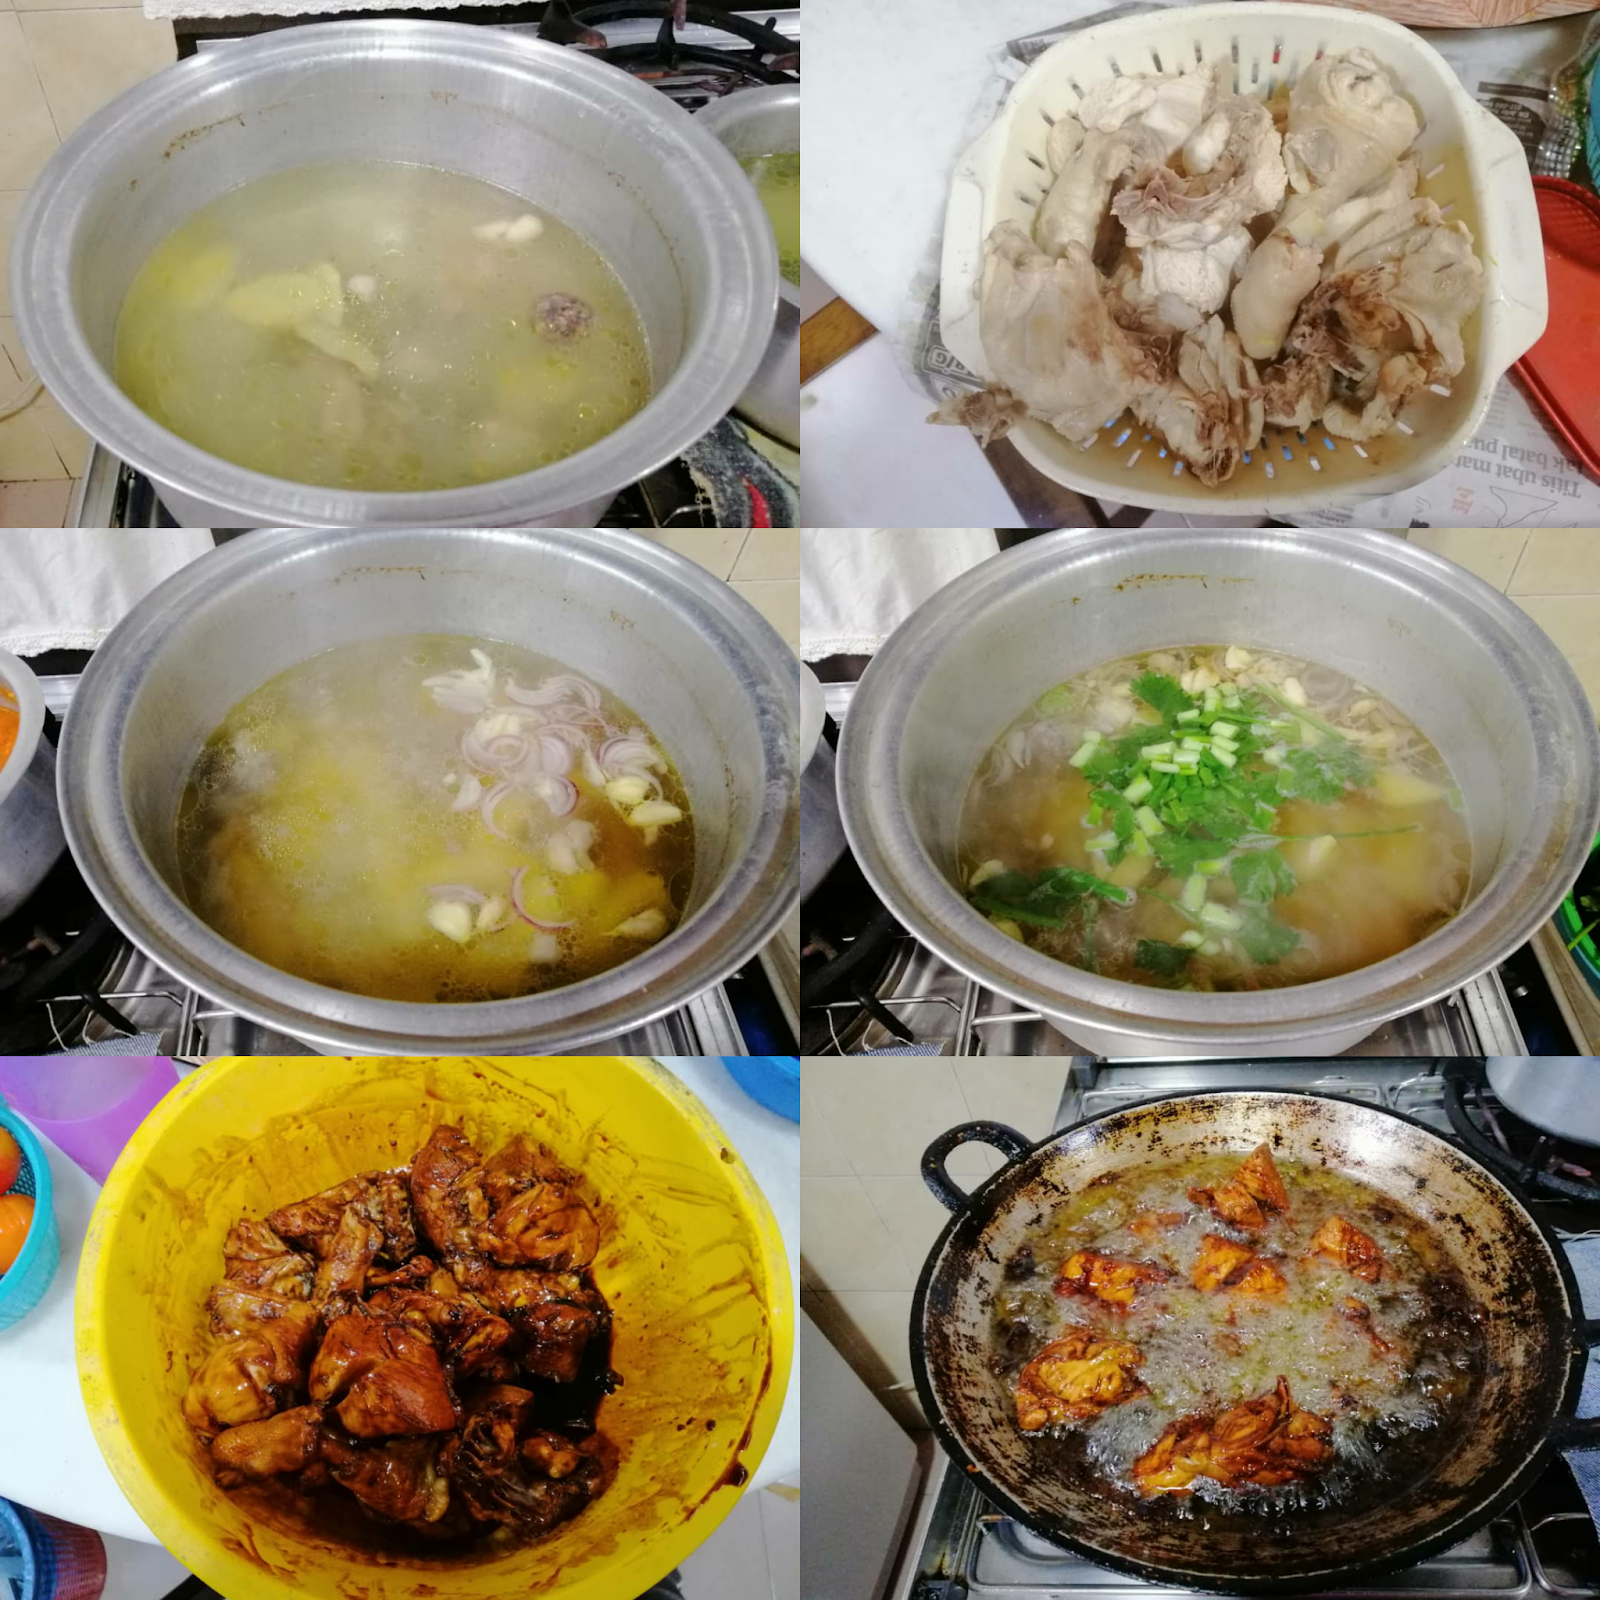 ! acuyuhan: Resepi Nasi Ayam untuk 10 orang makan